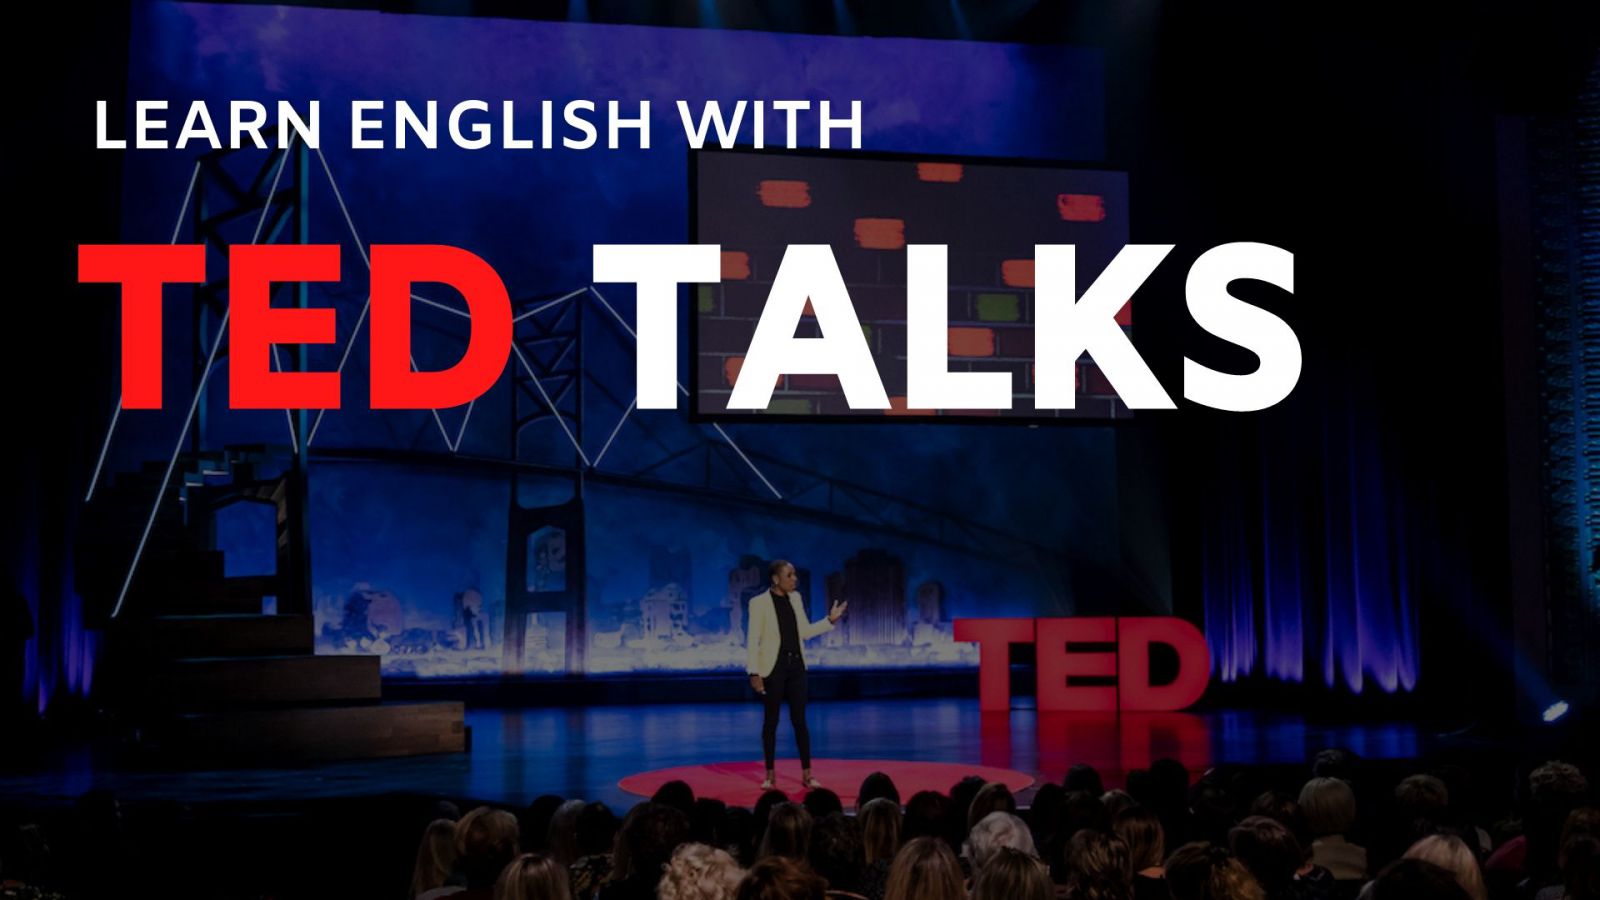 TED Talks như một công cụ để học tiếng Anh